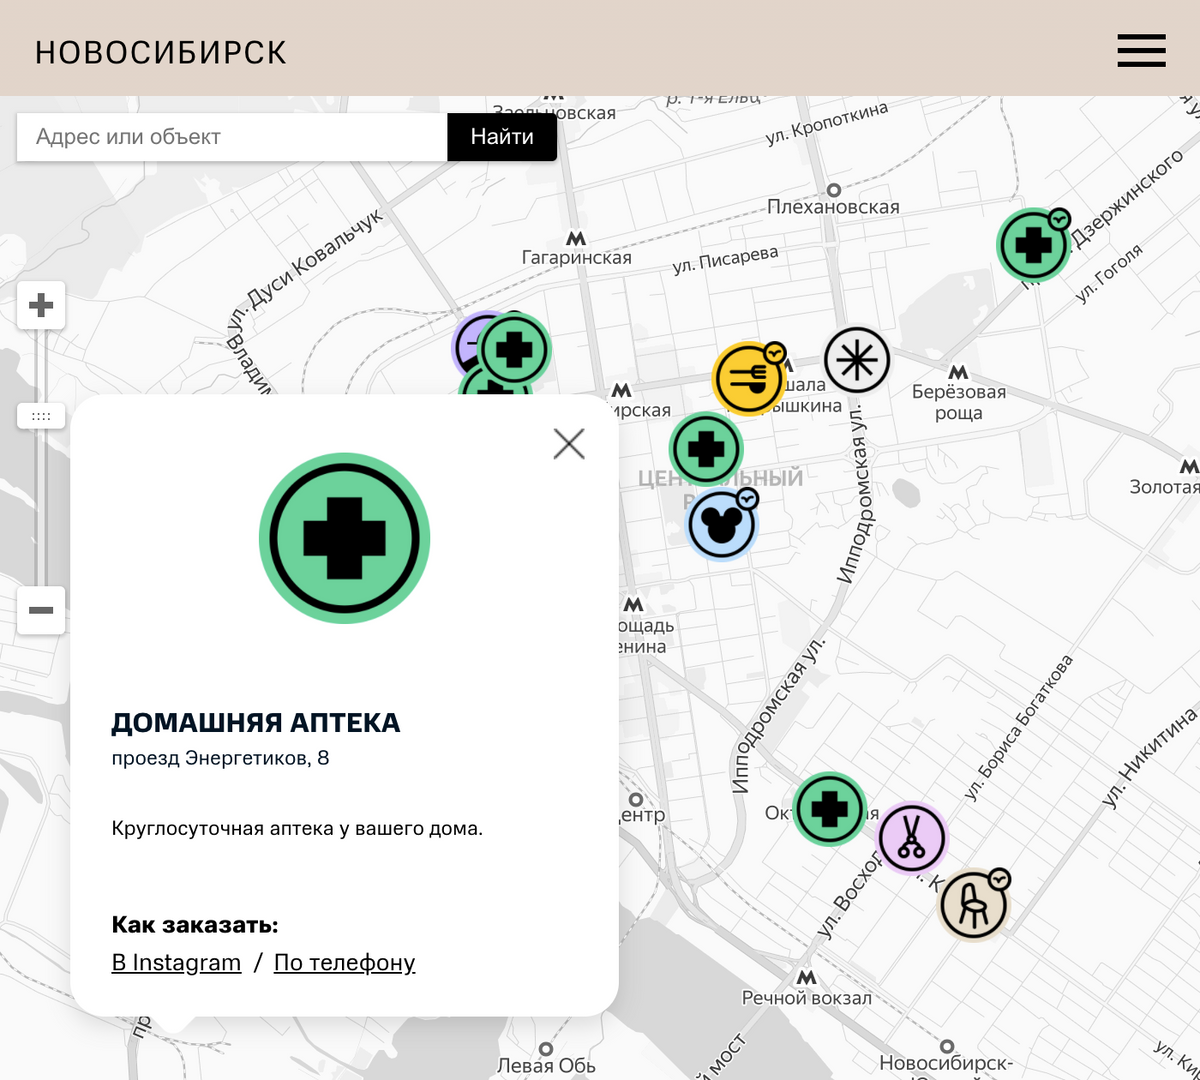 На карте собраны не только кафе, но и продуктовые магазины, цветочные лавки, автосервисы и мастерские в 19 городах России